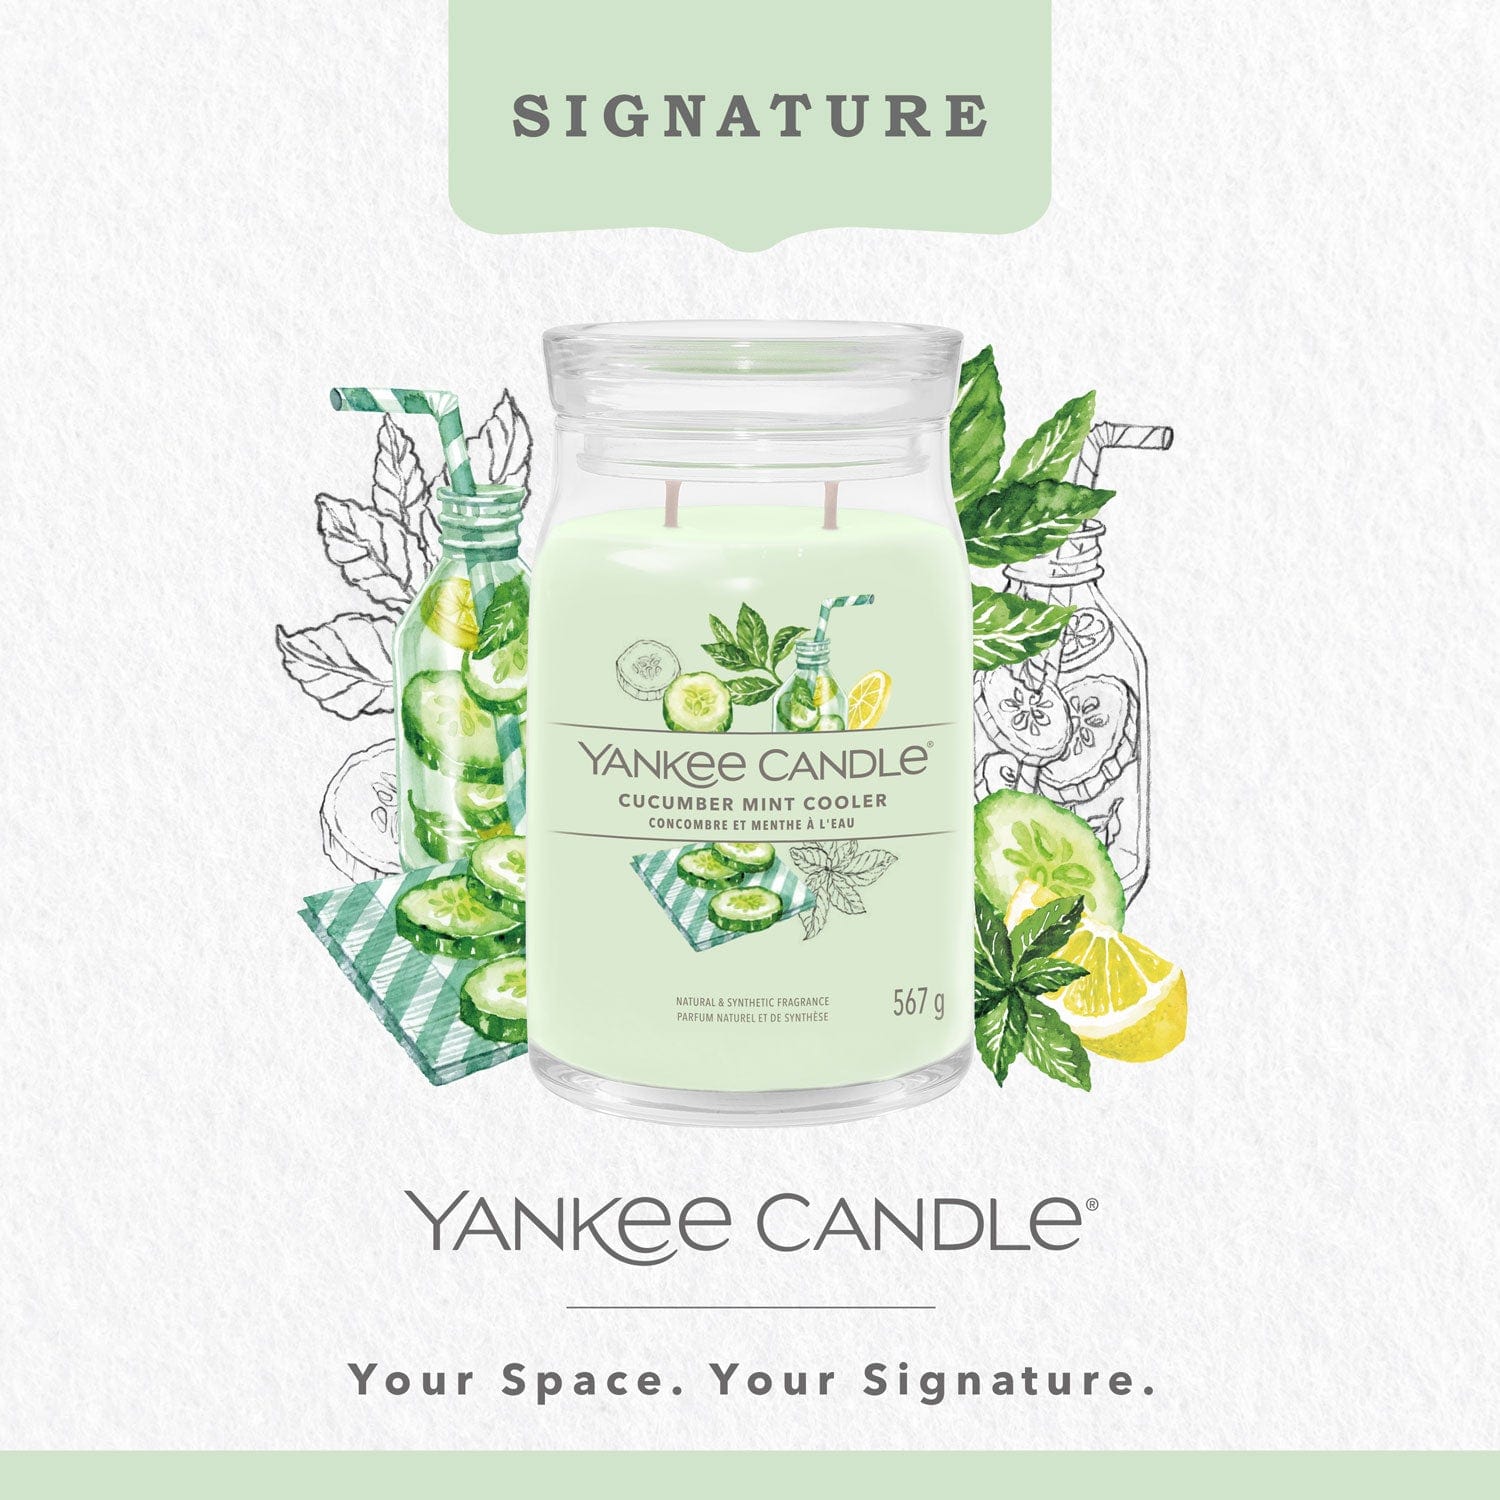 Yankee Candle Signature Large Candle Yankee Candle Signature Large Jar  - Cucumber Mint Cooler